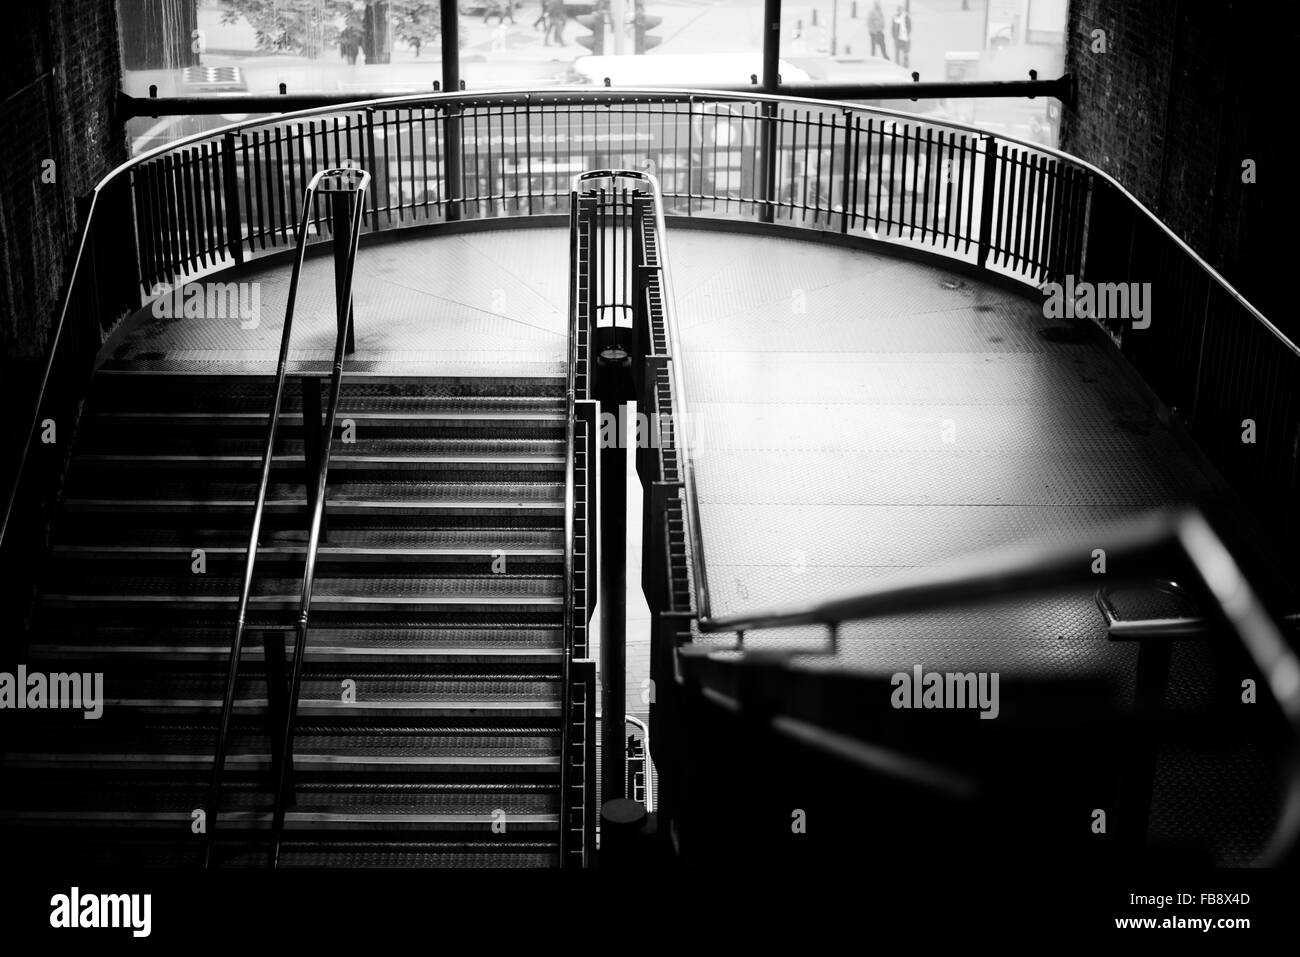 Schwarz / weiß-Treppe und Landung in der Londoner u-Bahnstation mit natürlichem Licht. Hoher Kontrast launisch aussehen Treppen Stockfoto